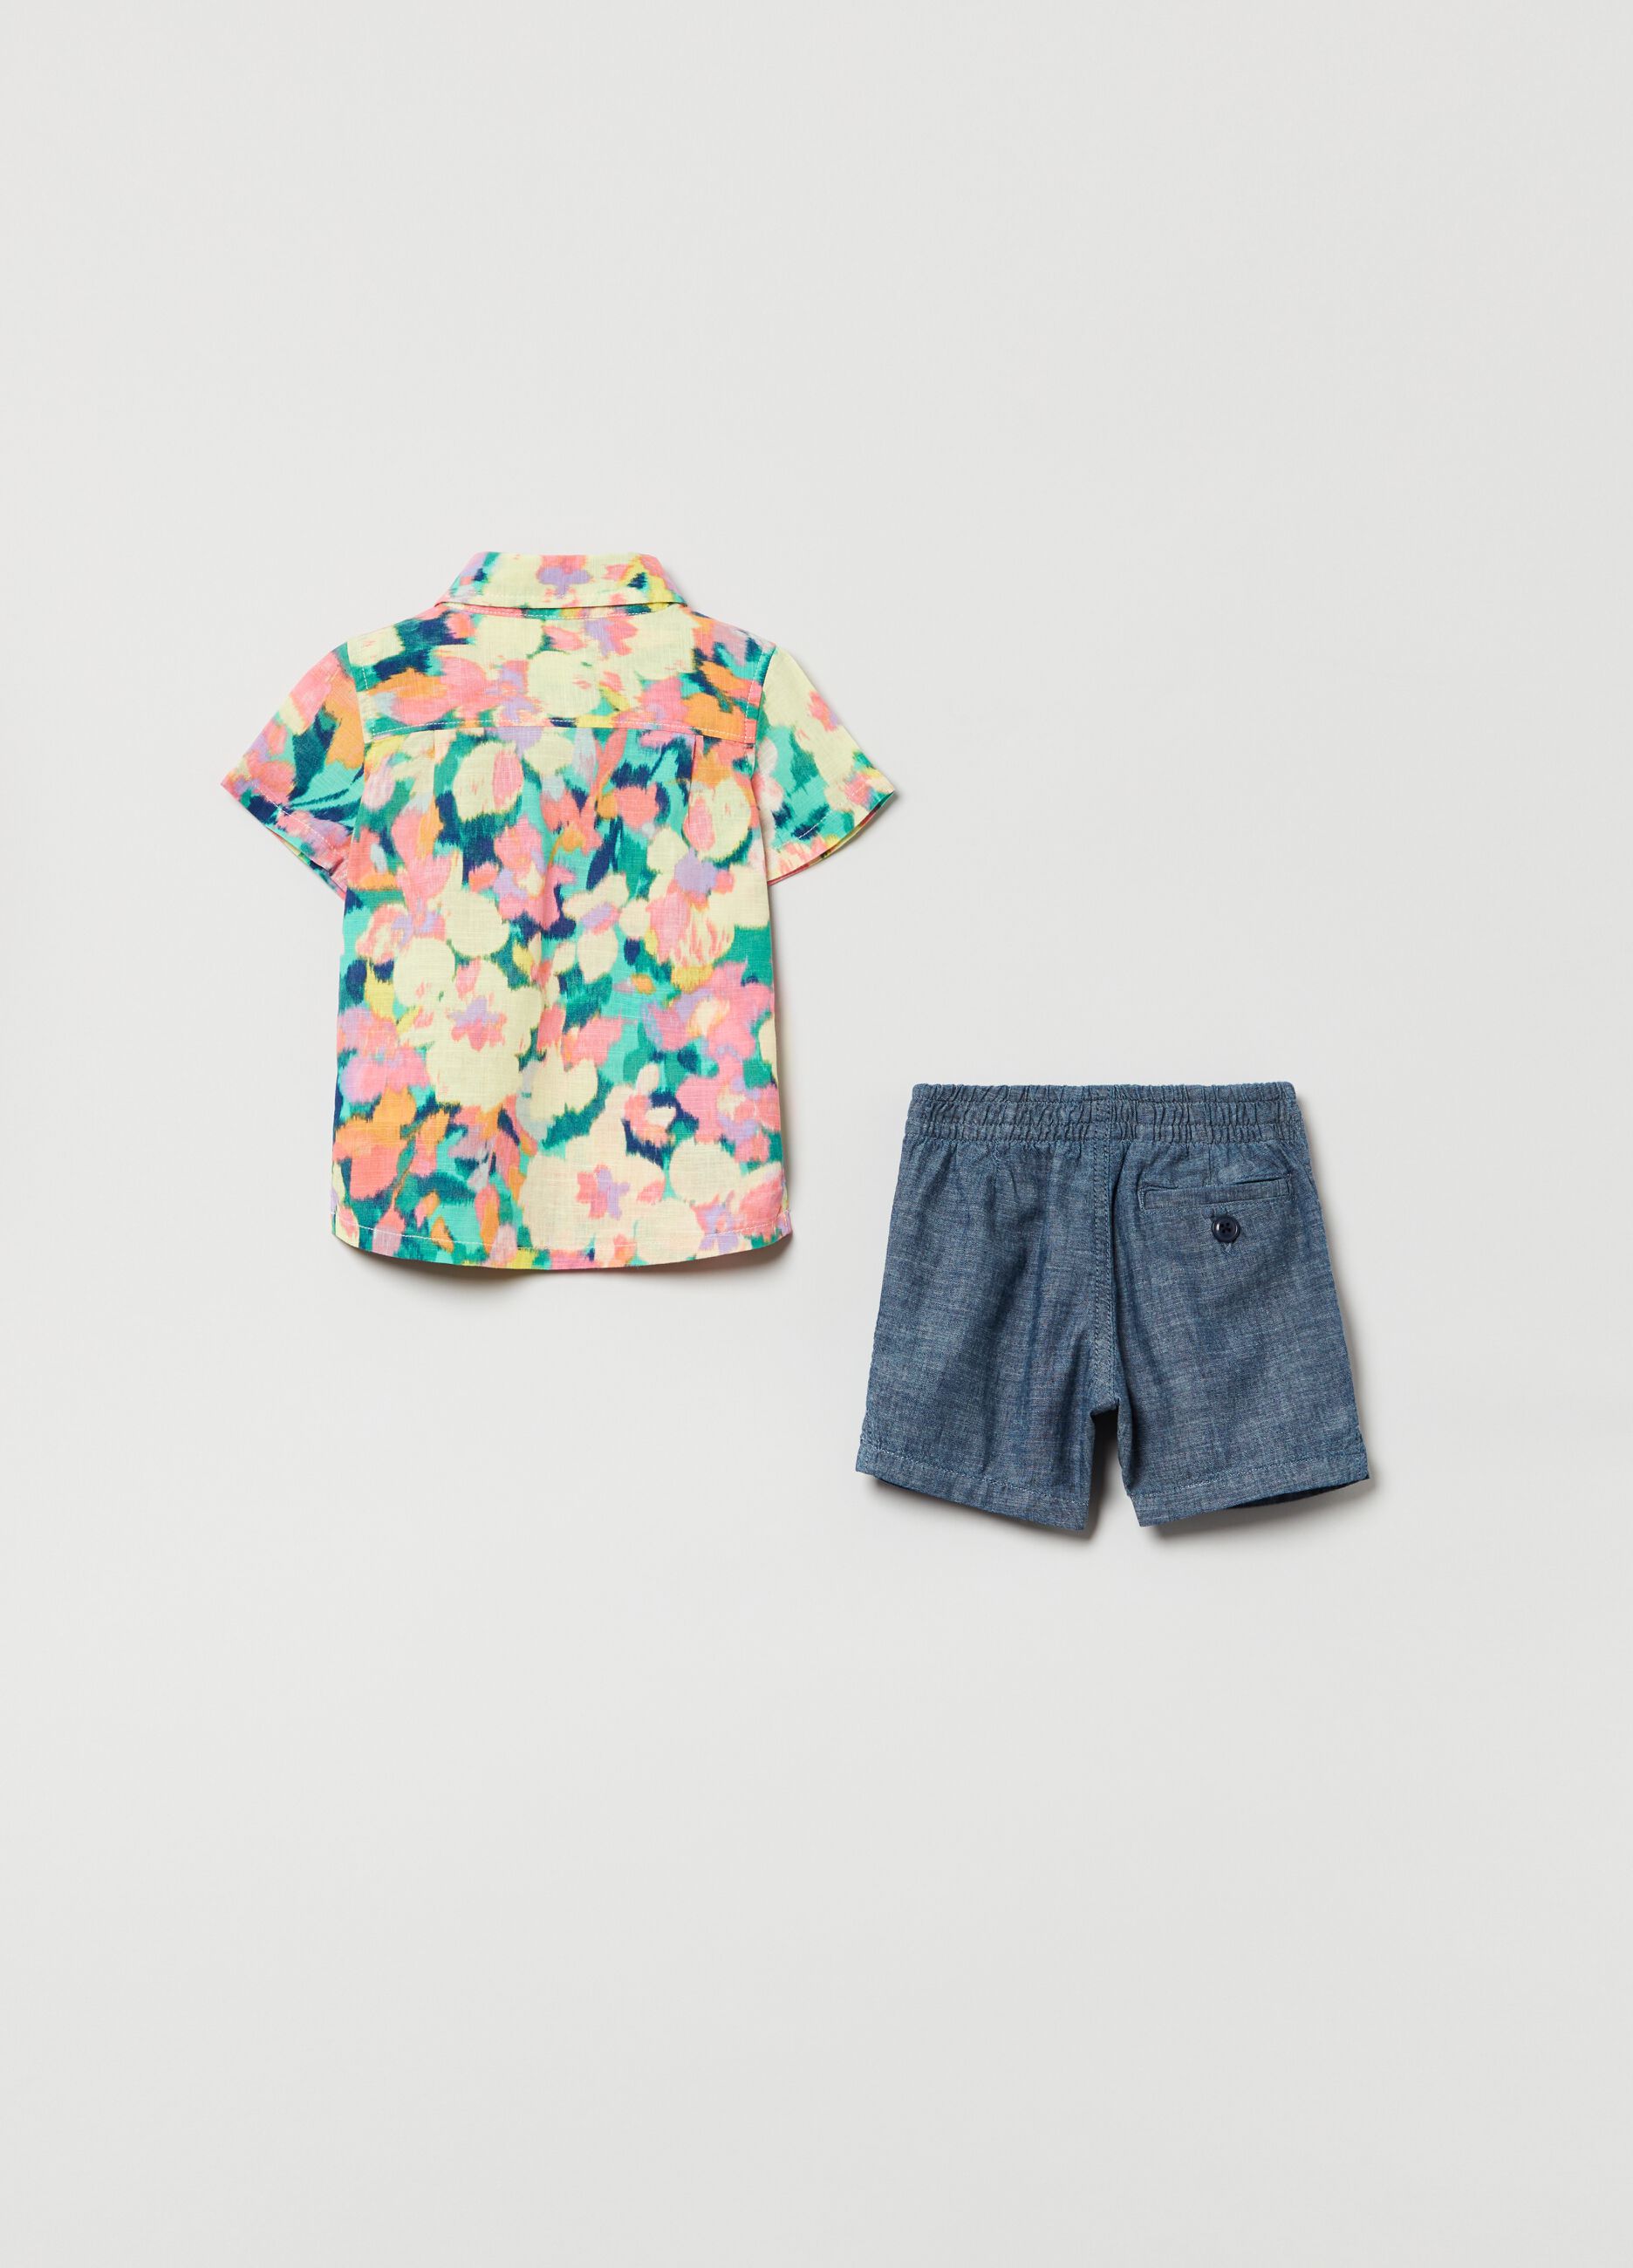 Floral shirt and Bermuda shorts with drawstring set